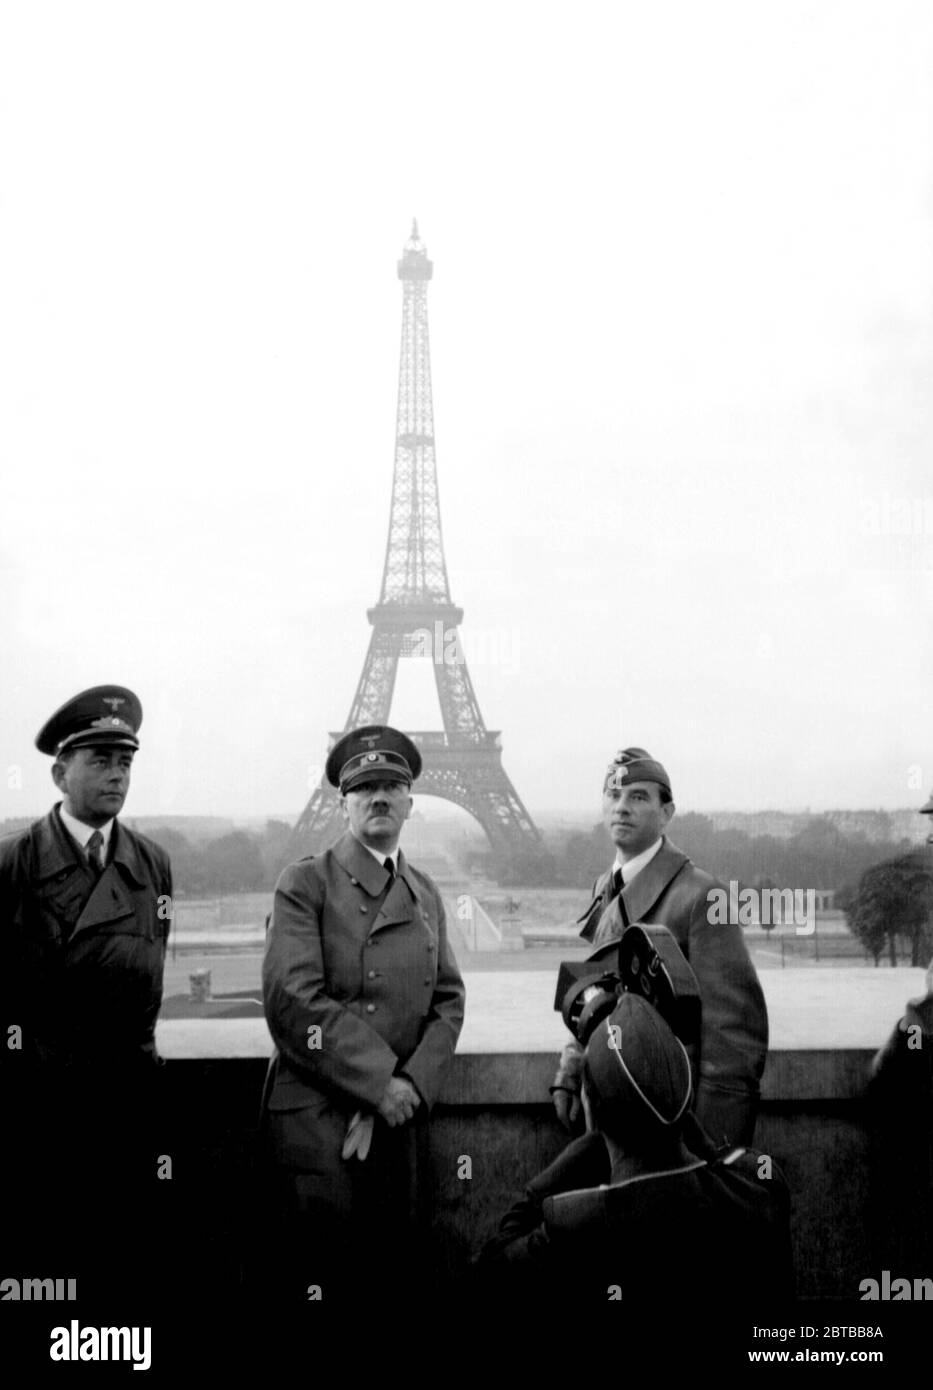 1940 , 23. juni, Paris , FRANKREICH : Der deutsche Führerdiktator ADOLF HITLER (1889 - 1945) mit dem Architekten ALBERT SPEER (1905 - 1981) (links) und dem Bildhauer ARNO BRECKER (1900 - 1991) am Trocadero in Paris, im Hintergrund der Turm Tour EIFFEL. Fotopropaganda von Hitlers persönlichem Fotografen Heinrich Hoffmann . - 2. WELTKRIEG - NAZI - NAZIST - NAZISMUS - NAZISTA - NAZISMO - SECONDA GUERRA MONDIALE - DITTATORE - POLITIK - POLITICO - PARIGI - ARCHITETTO - ARCHITETTURA - ARCHITEKTUR --- ARCHIVIO GBB Stockfoto